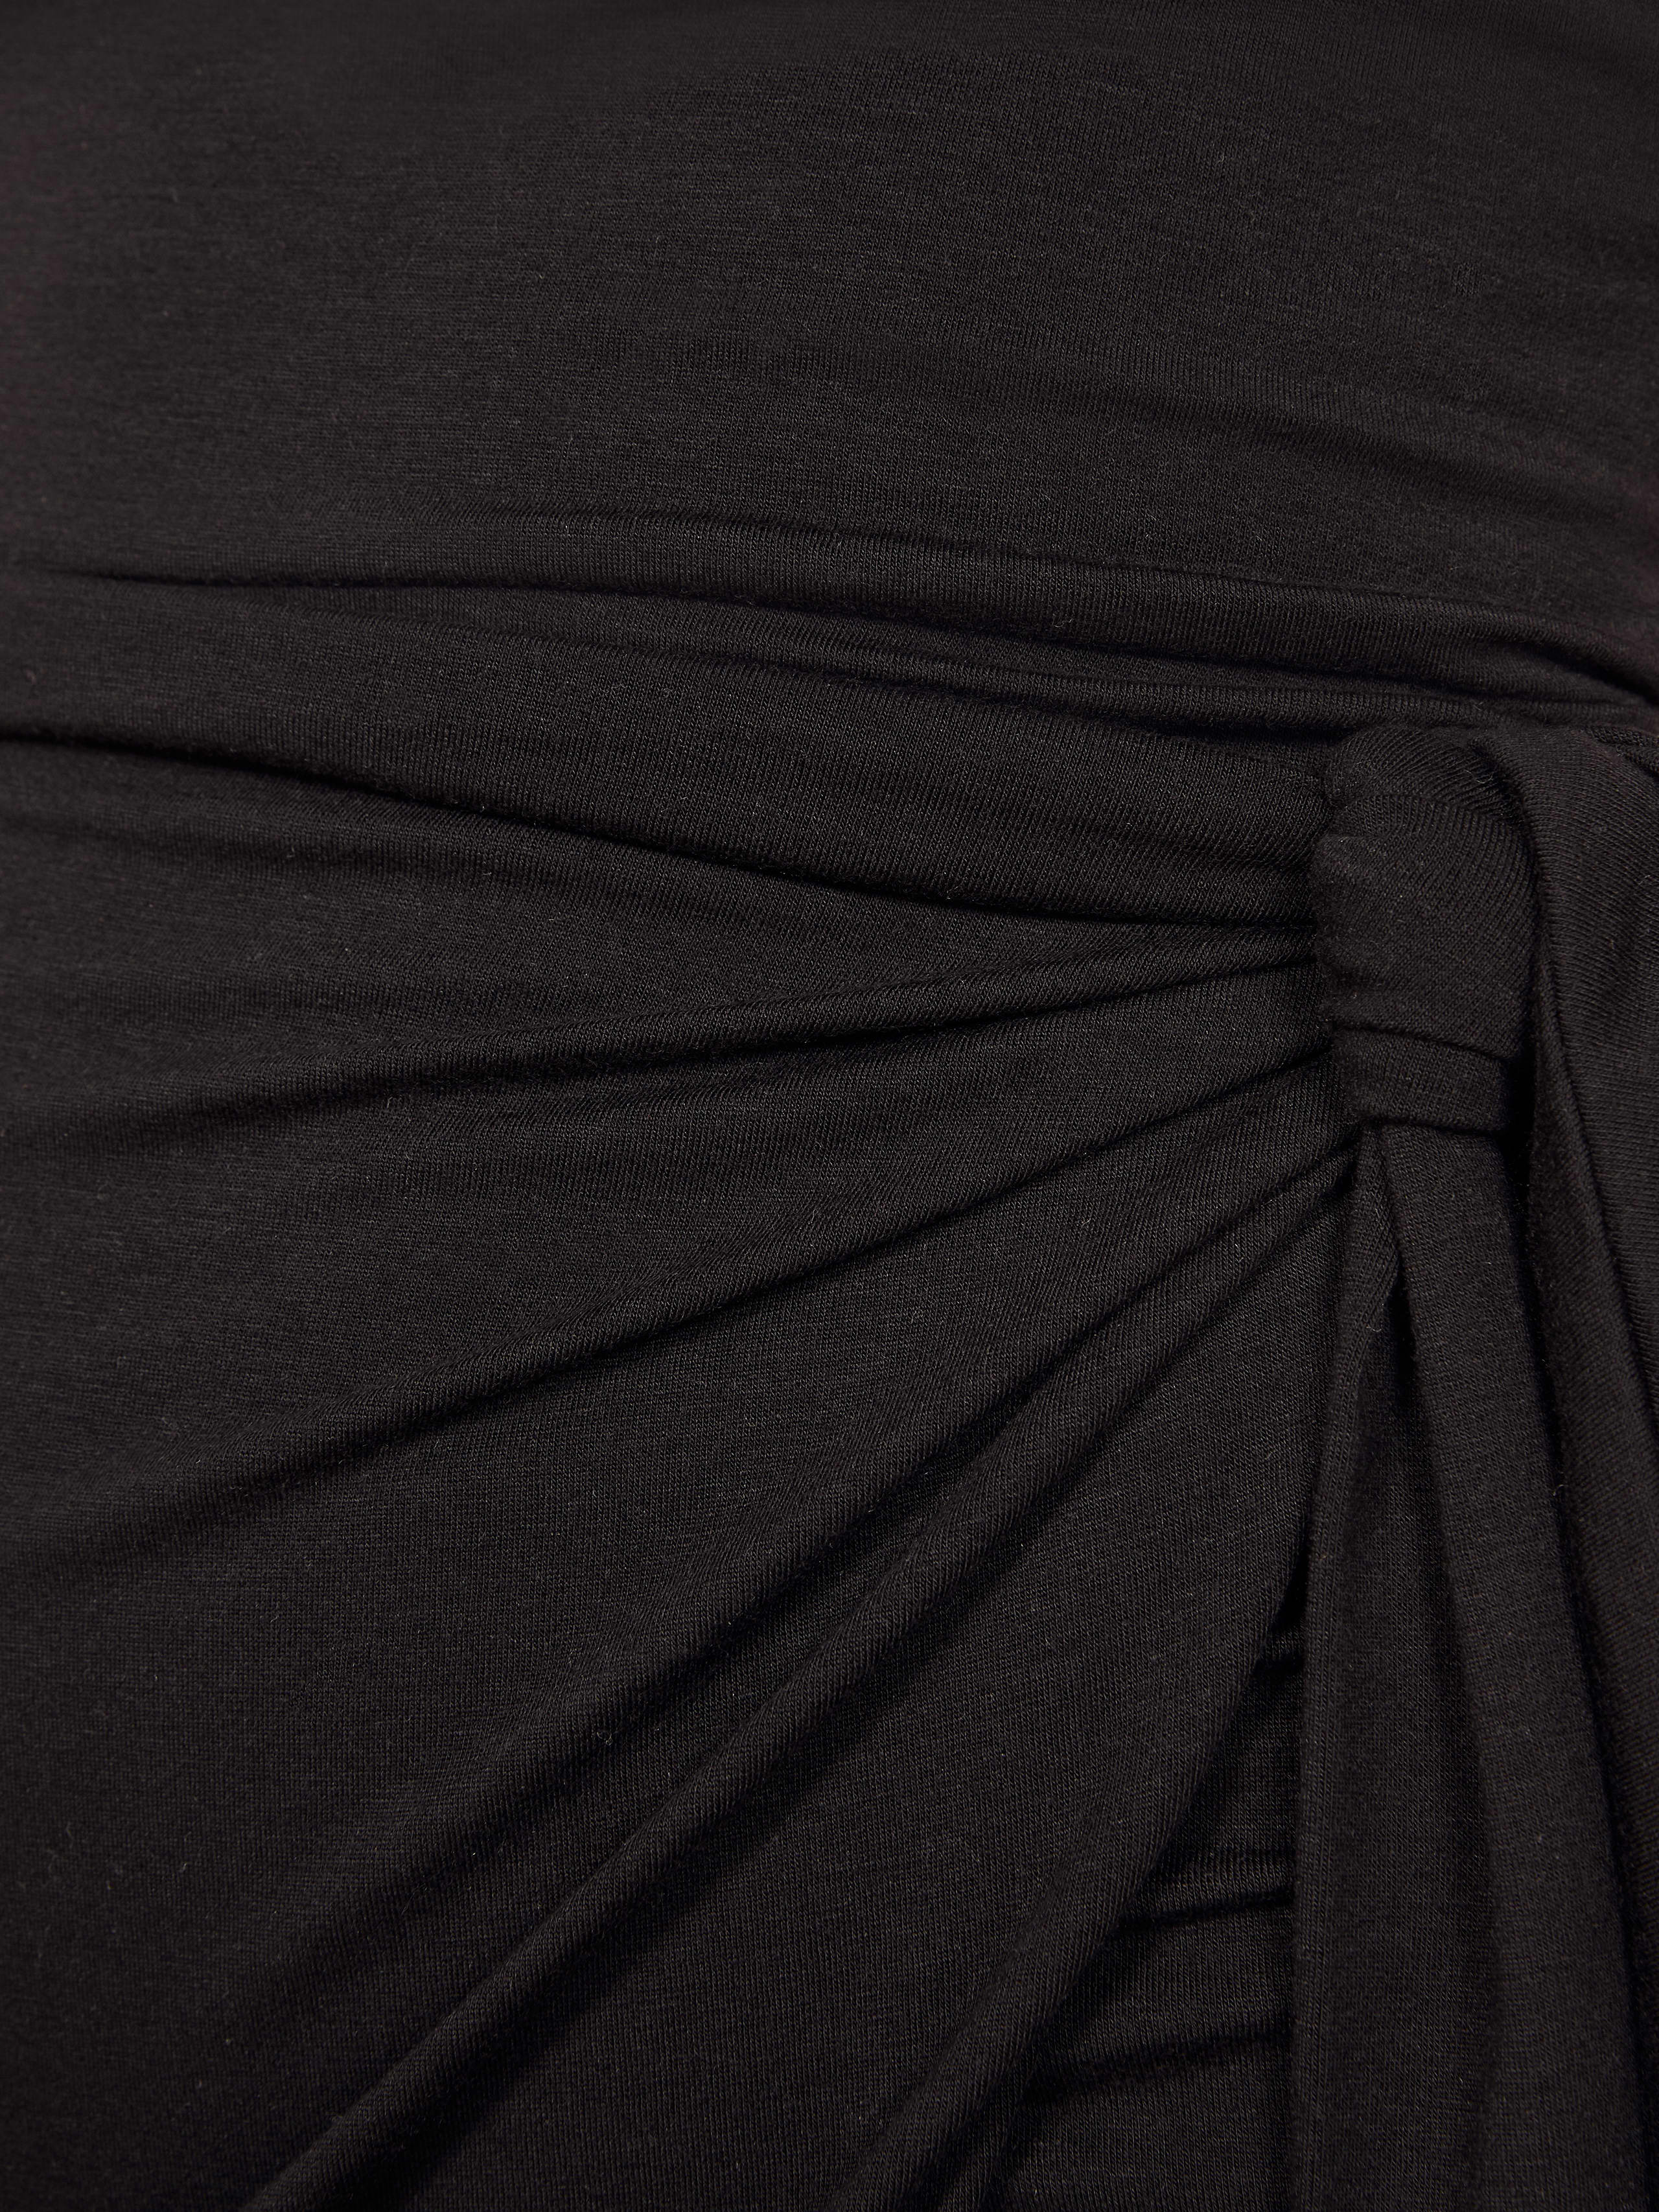 Kaila Dress - Sleeveless Midi Knit | Reformation